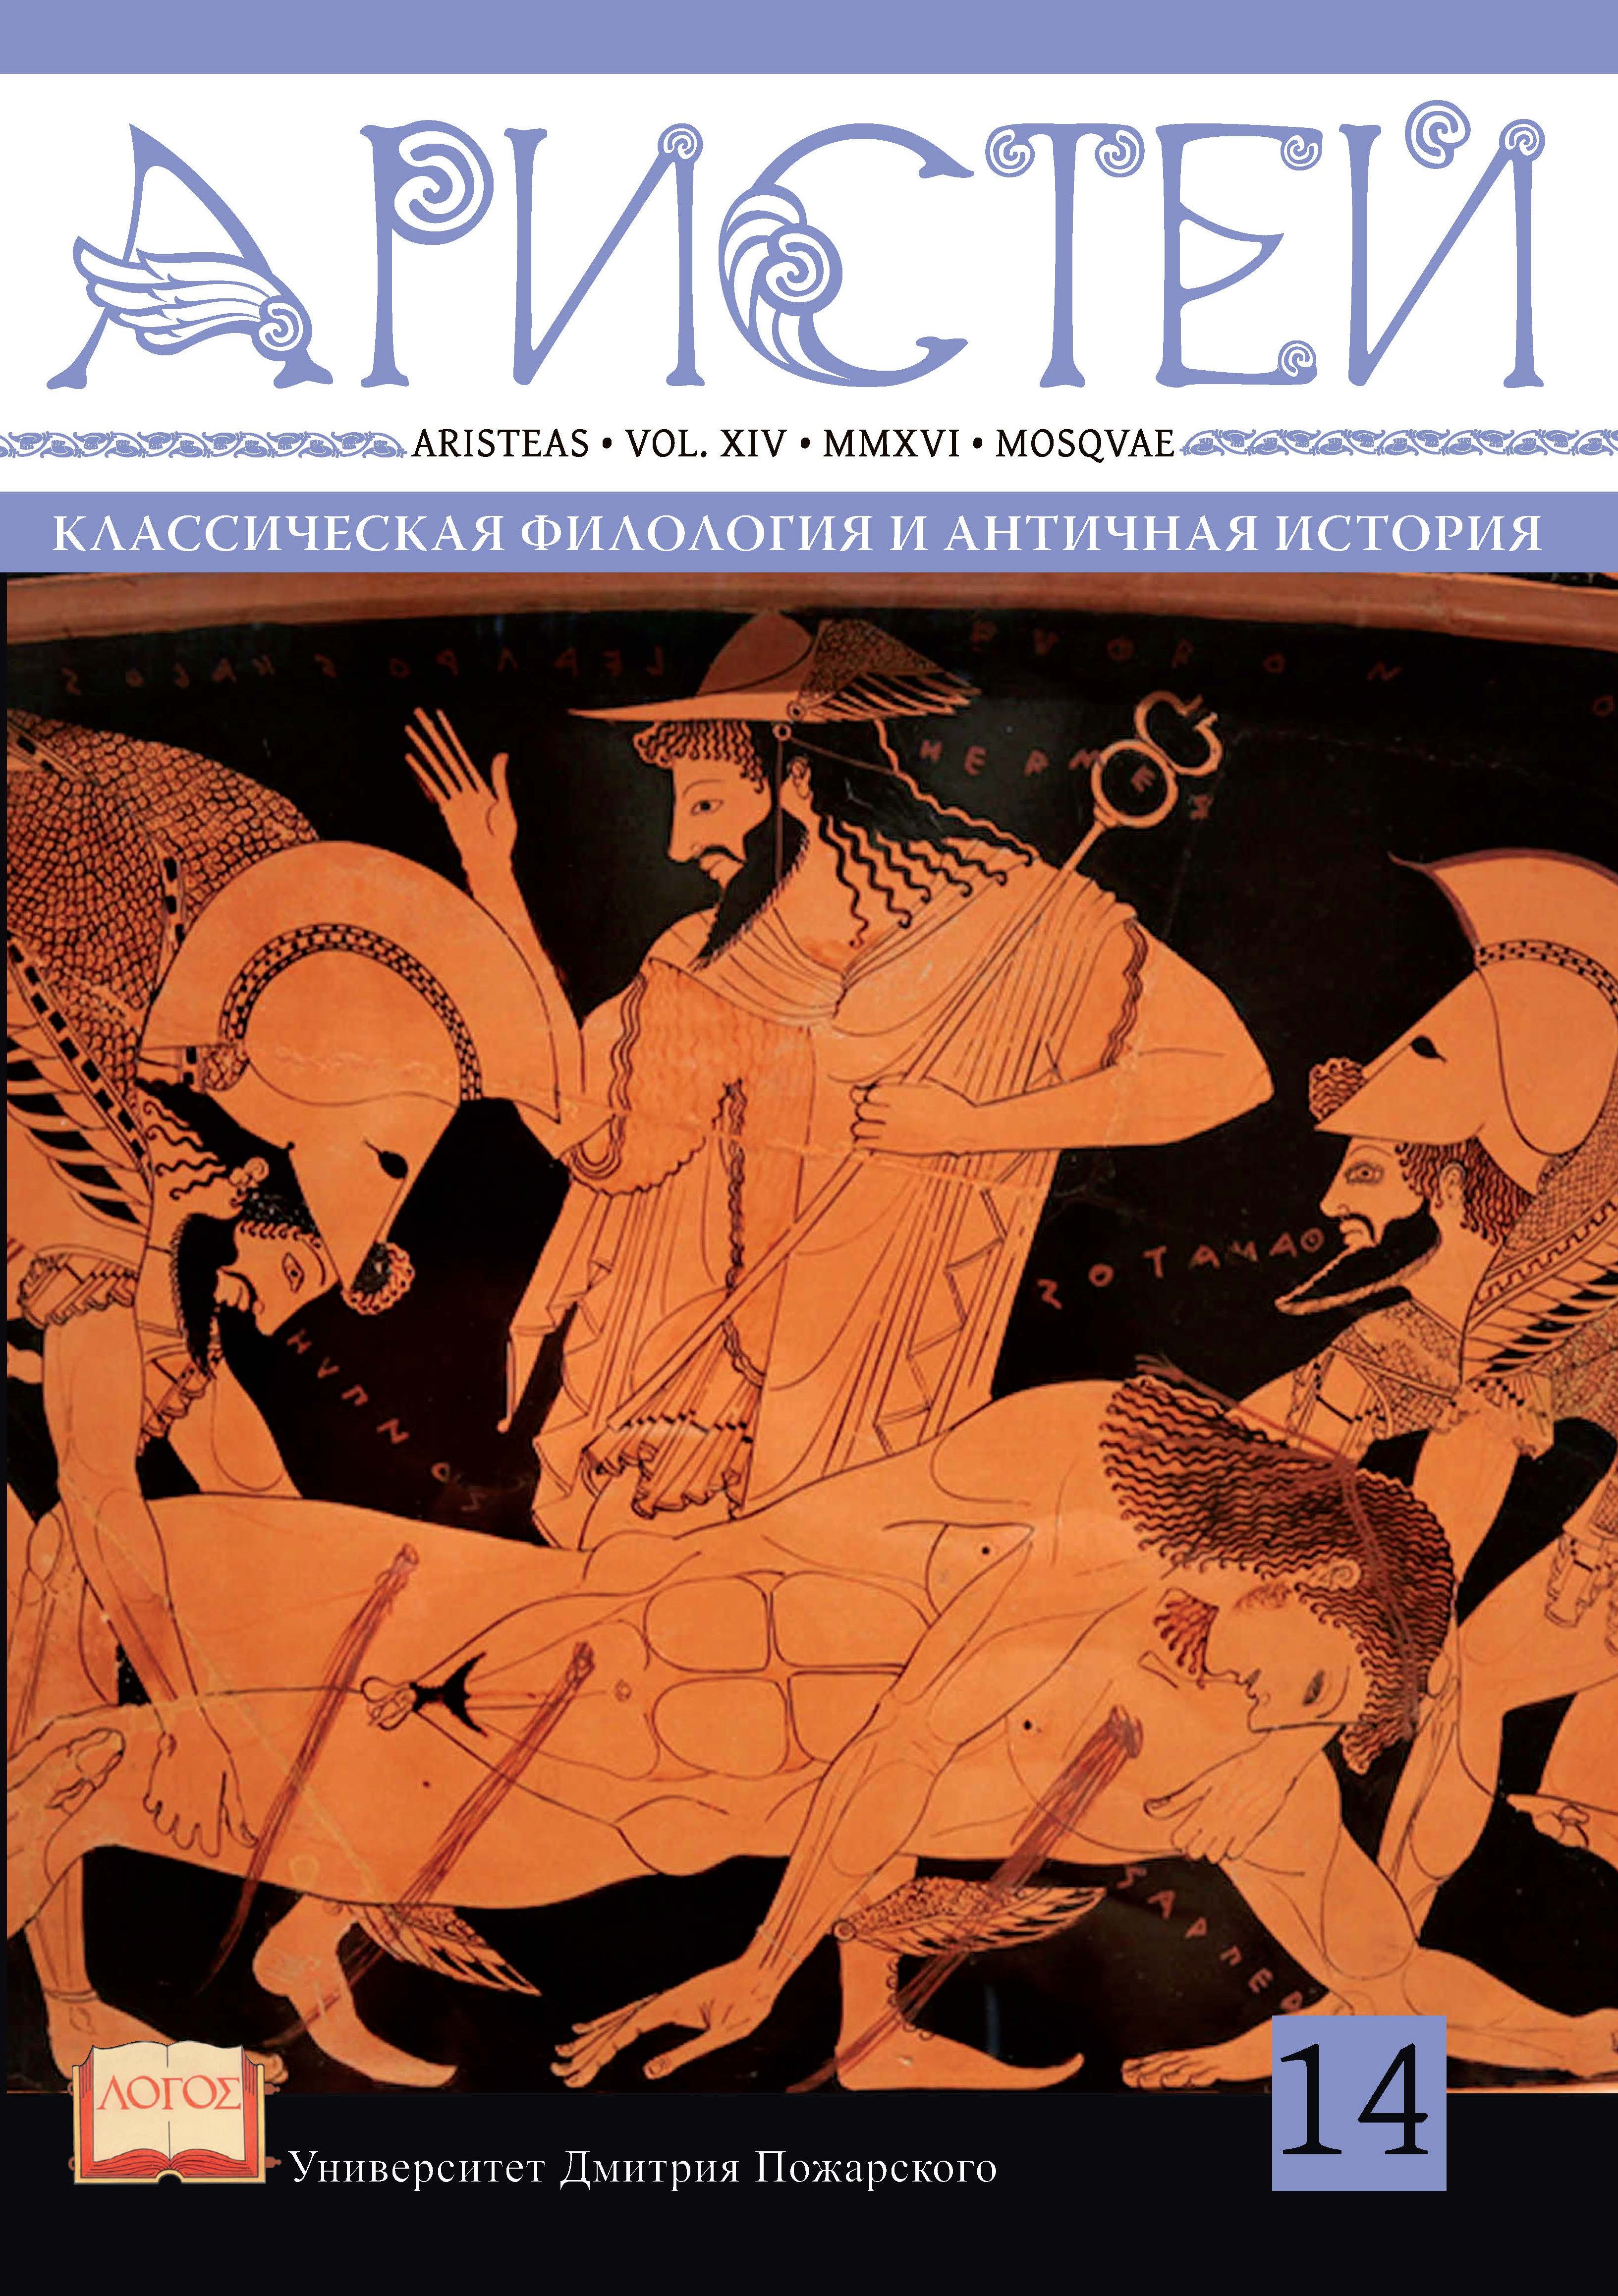 Журнал Аристей: вестник классической филологии и античной истории. Том XIV